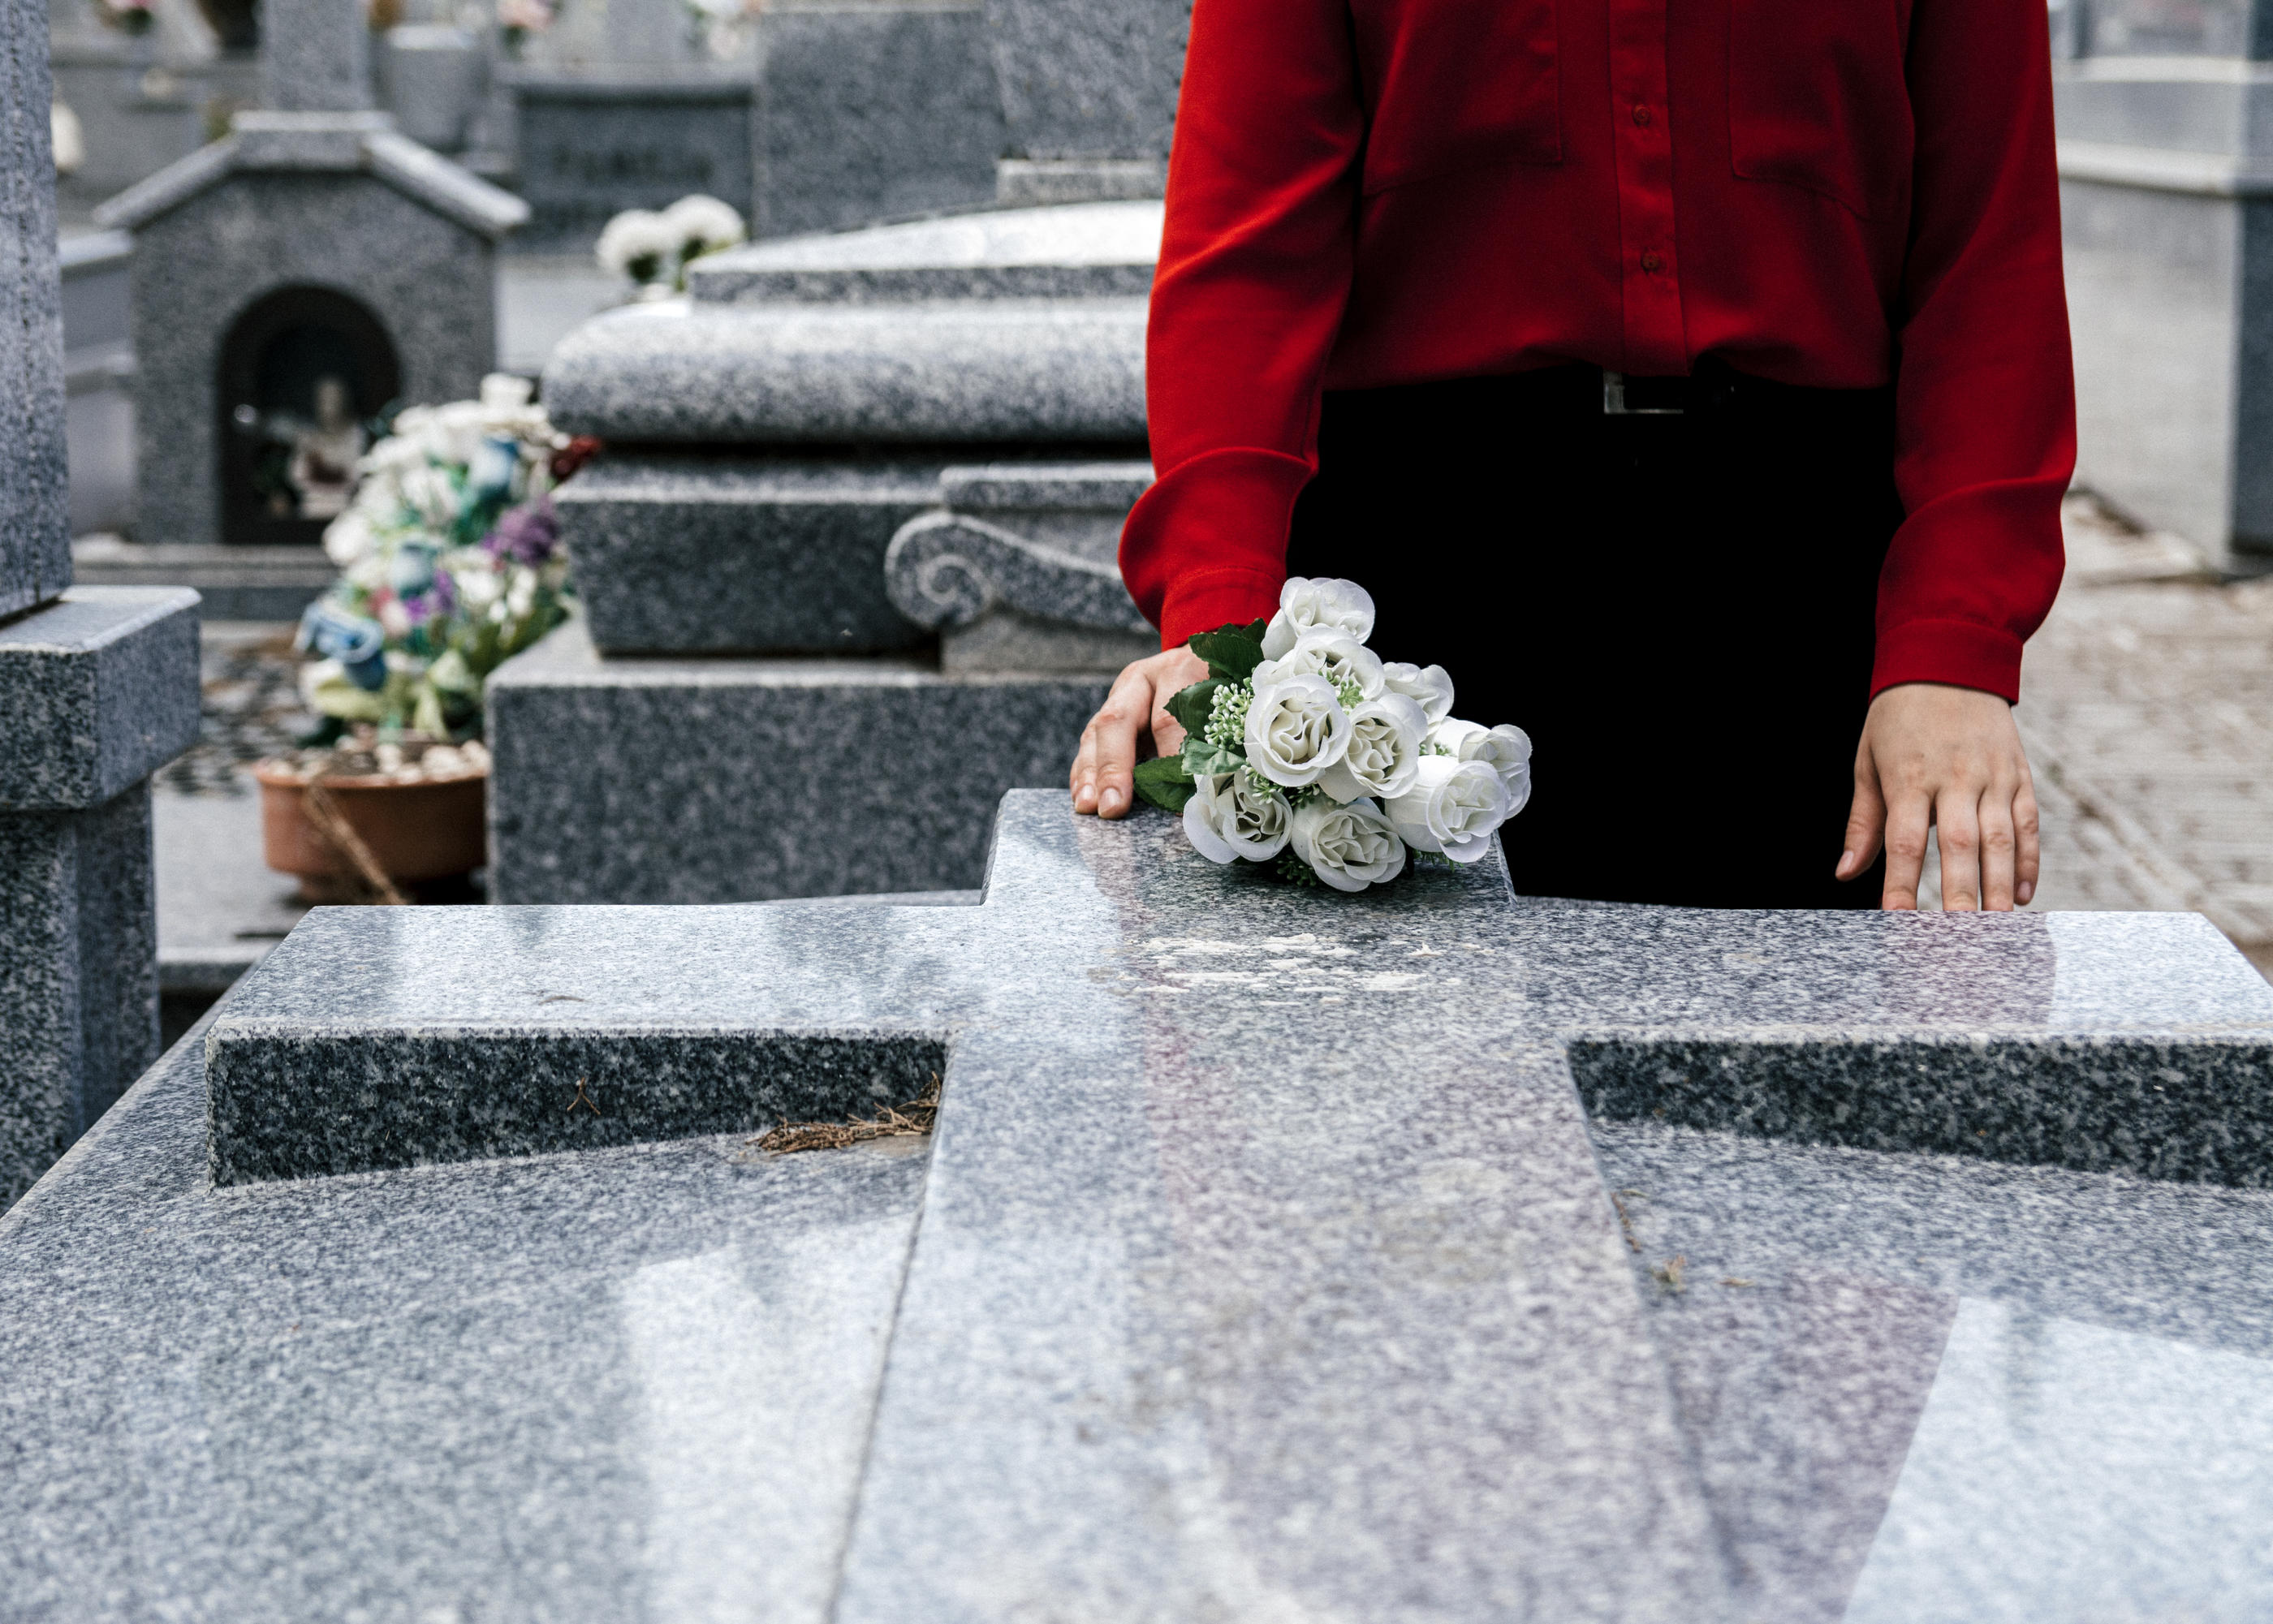 Le coût moyen des obsèques en 2019 était de 3815 euros pour une inhumation (hors marbrerie) et de 3986 euros pour une crémation. Istock